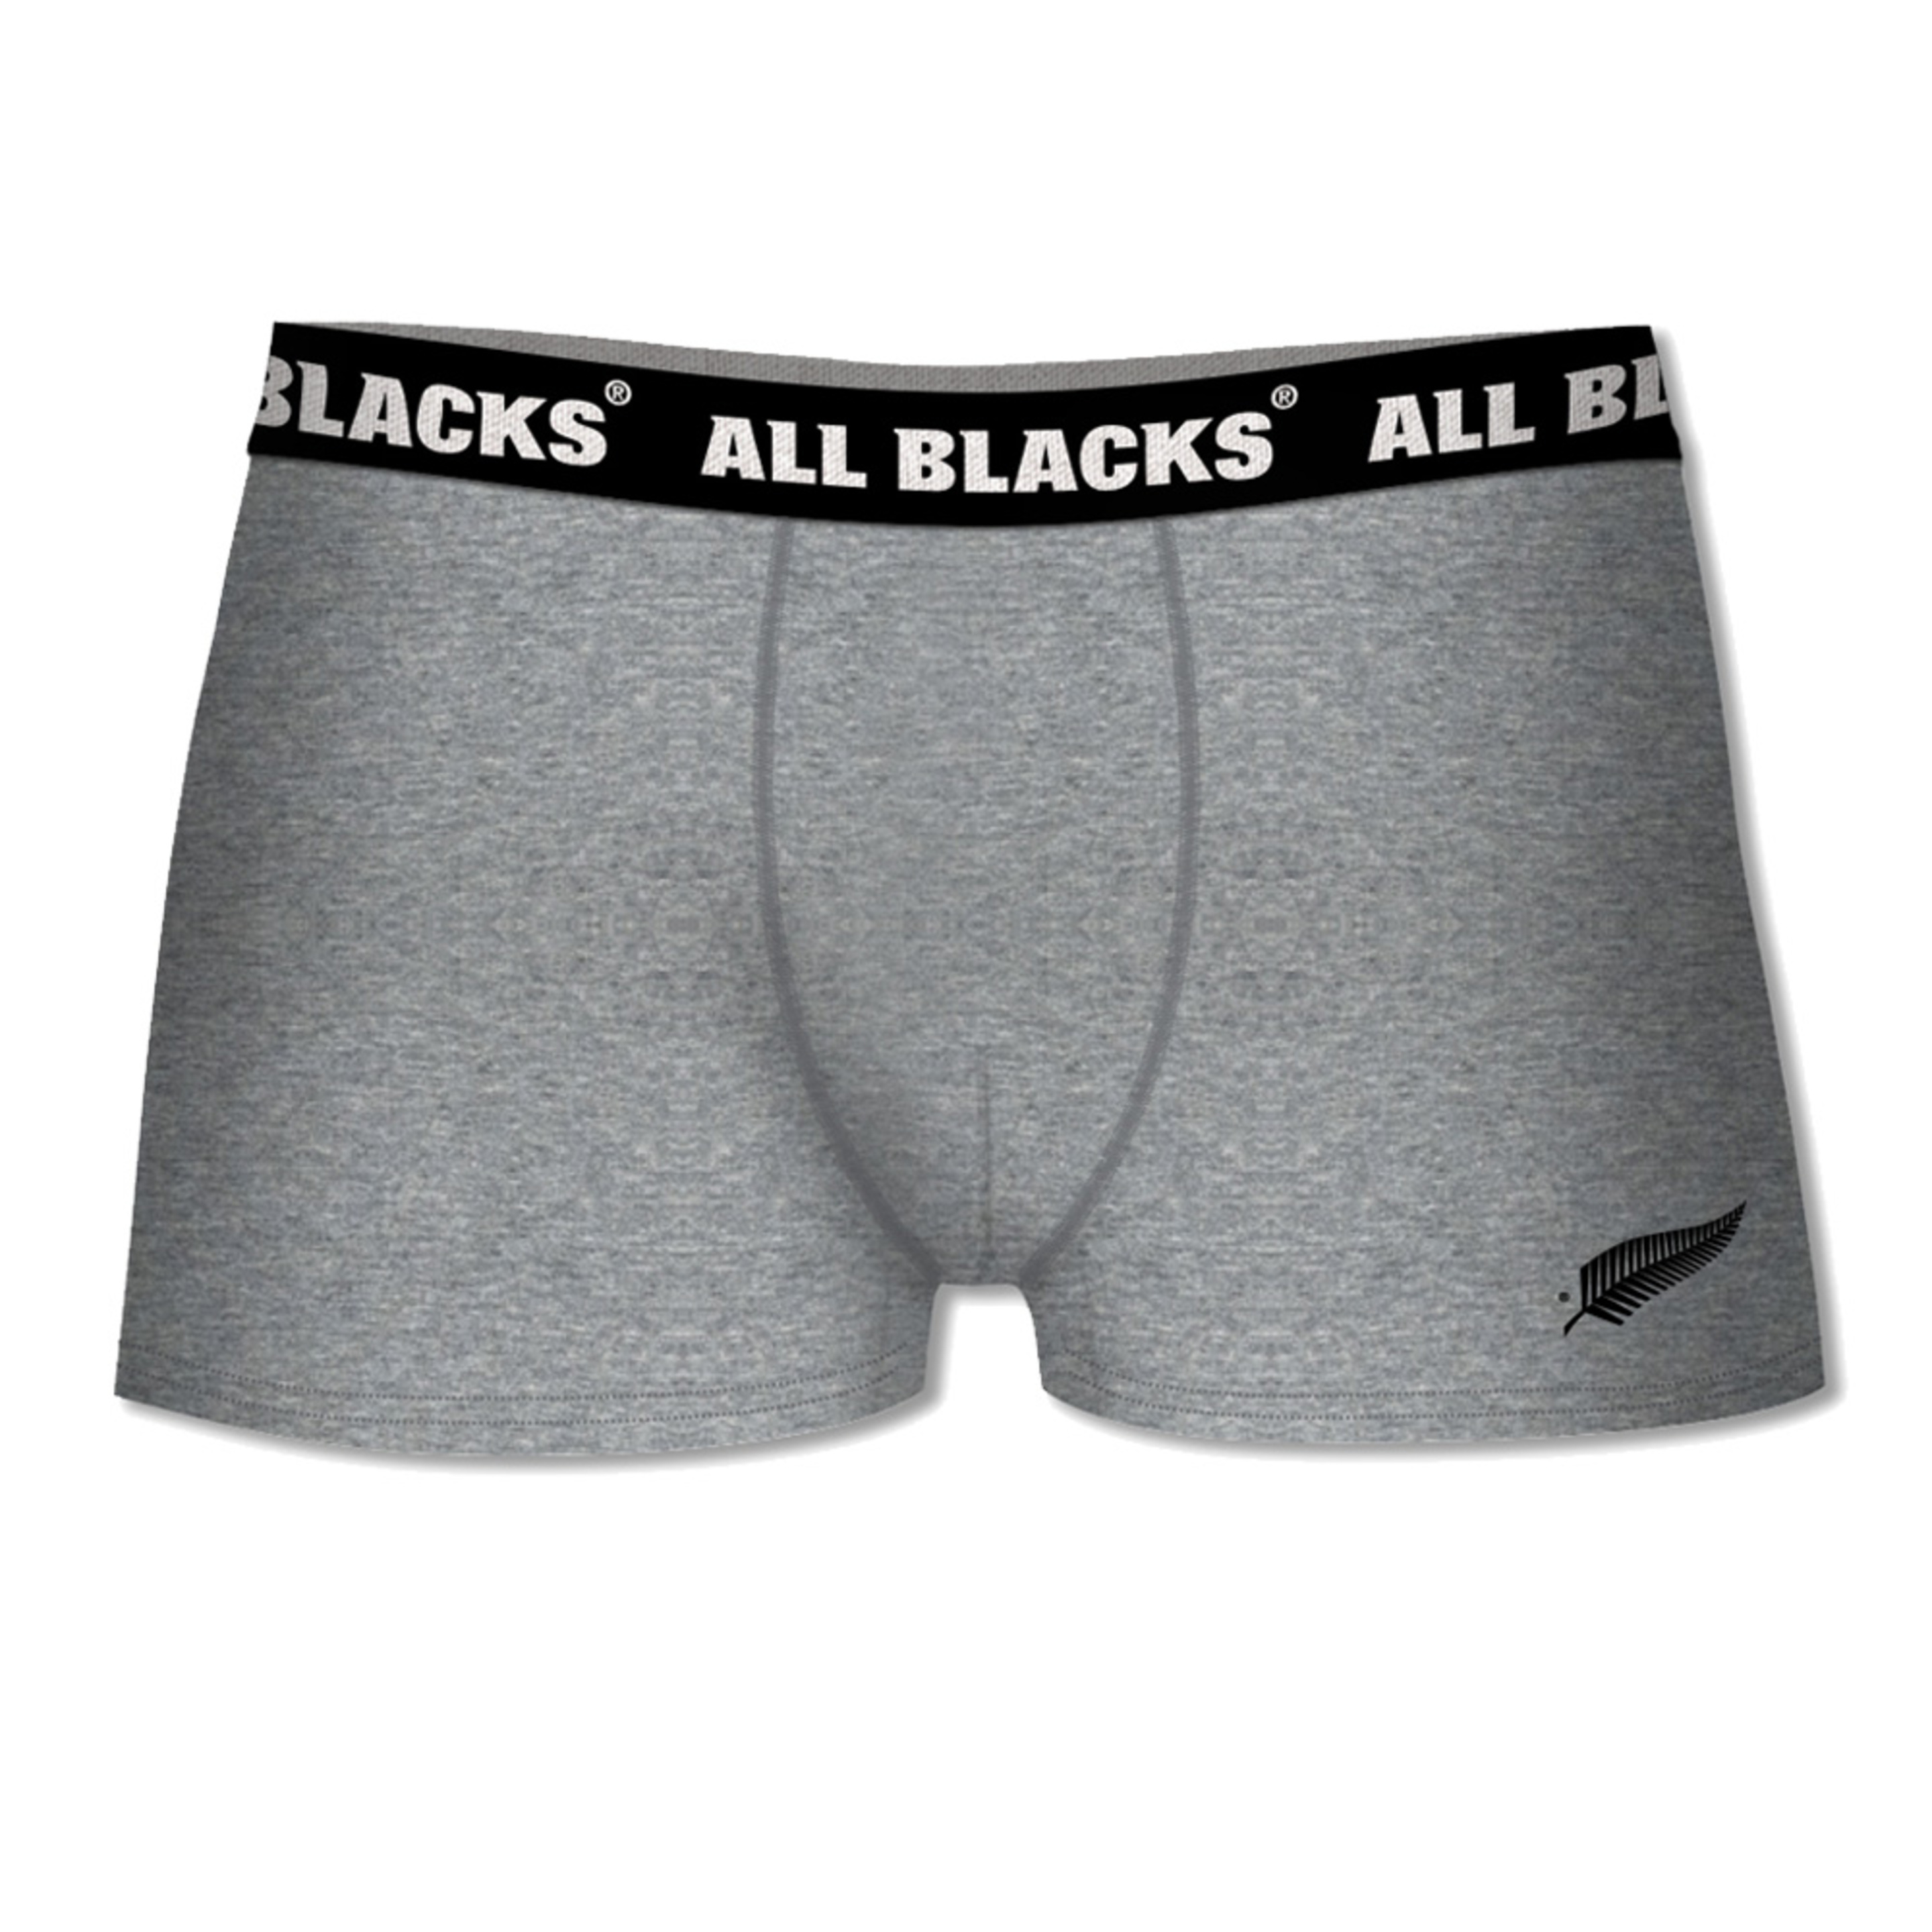 Cuecas All Blacks - gris-claro - 